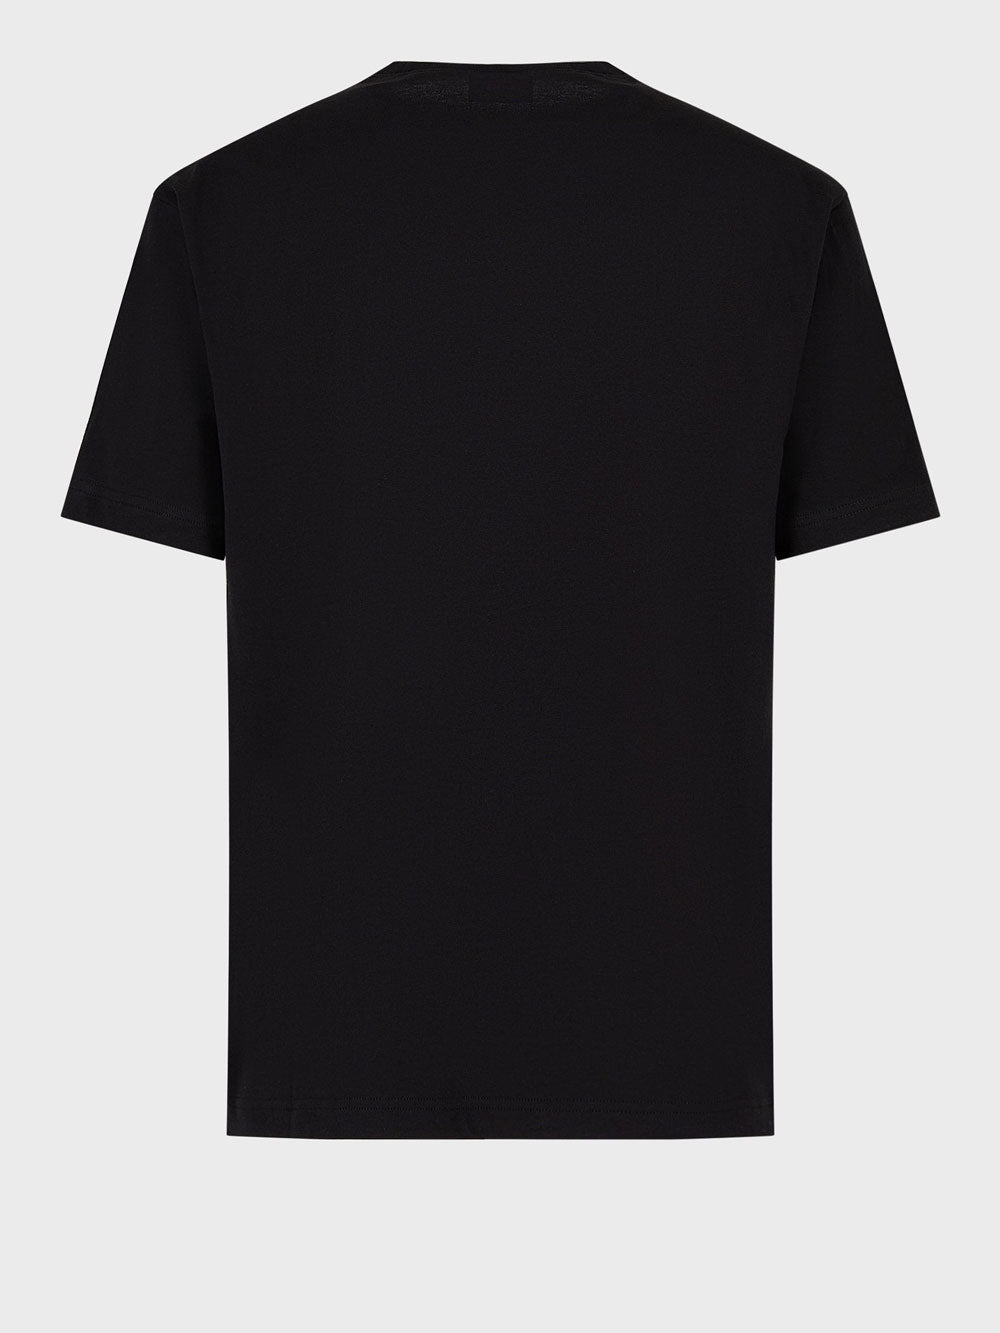 EA7 T-shirt Uomo - Nero